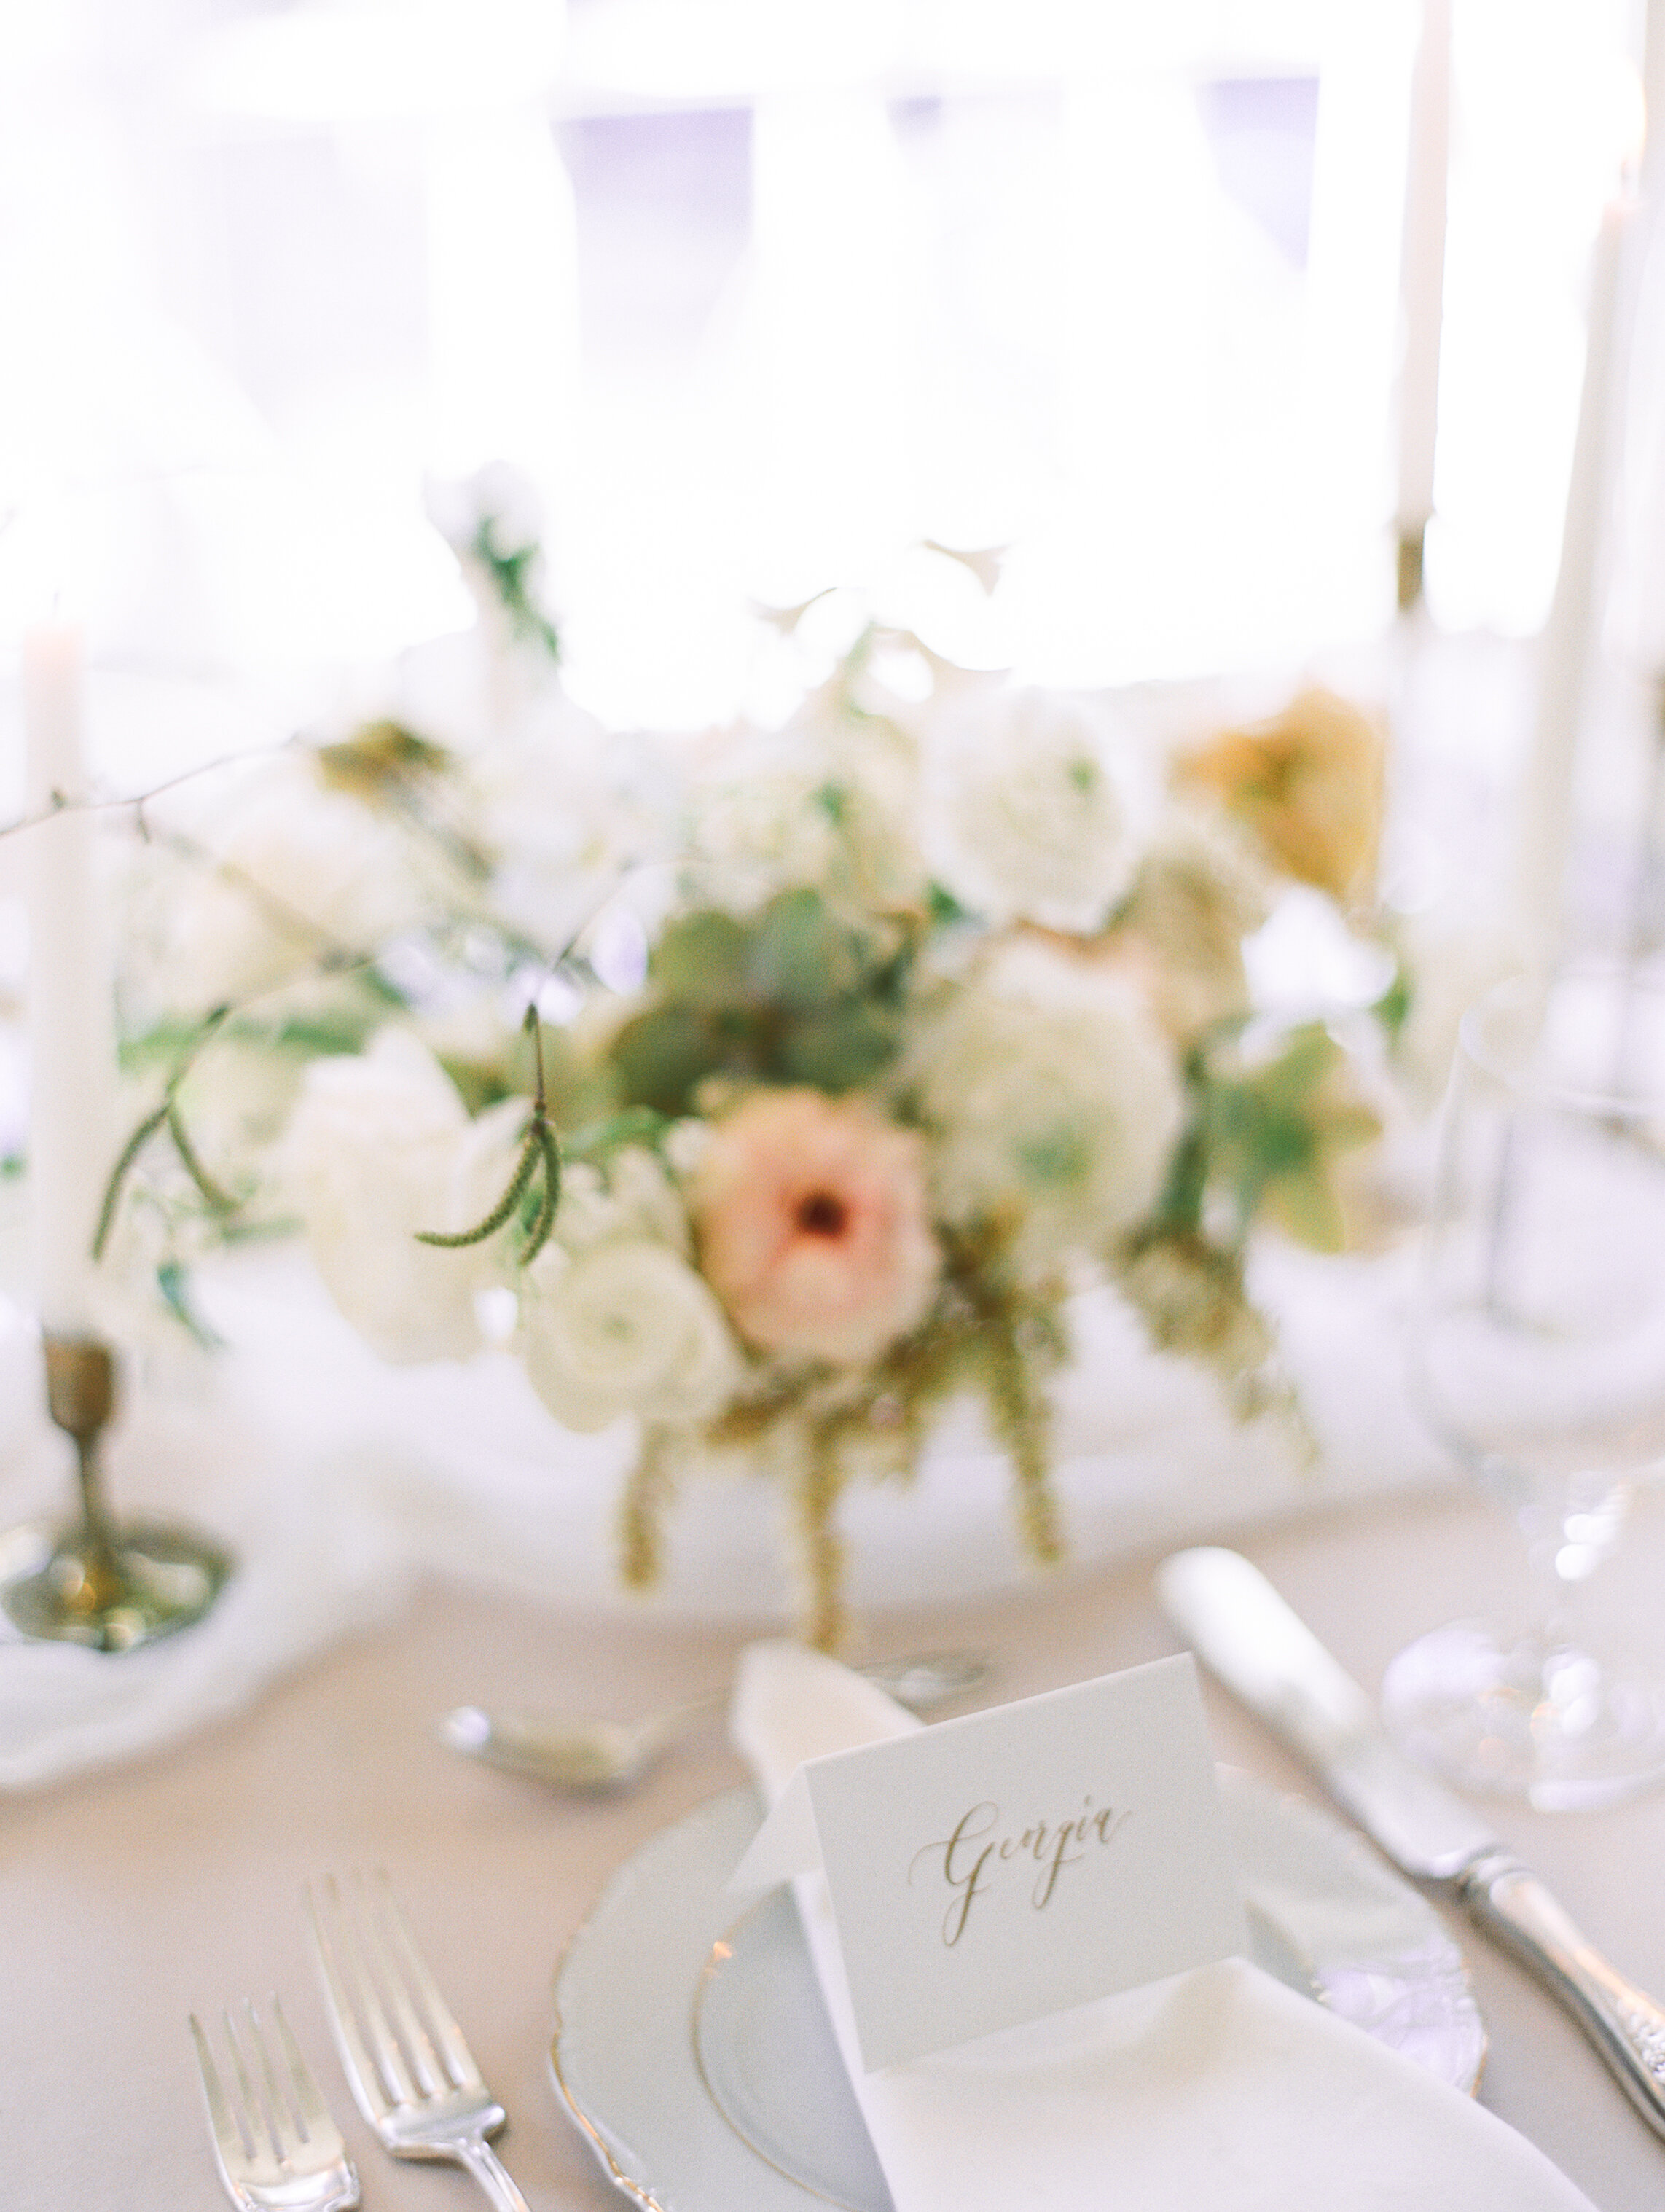 Rainier Chapter House Wedding Reception | Pacific Engagements Fine Art Wedding Table Centerpiece | Botanique Flowers | La Happy Design | La Happy Calligraphy